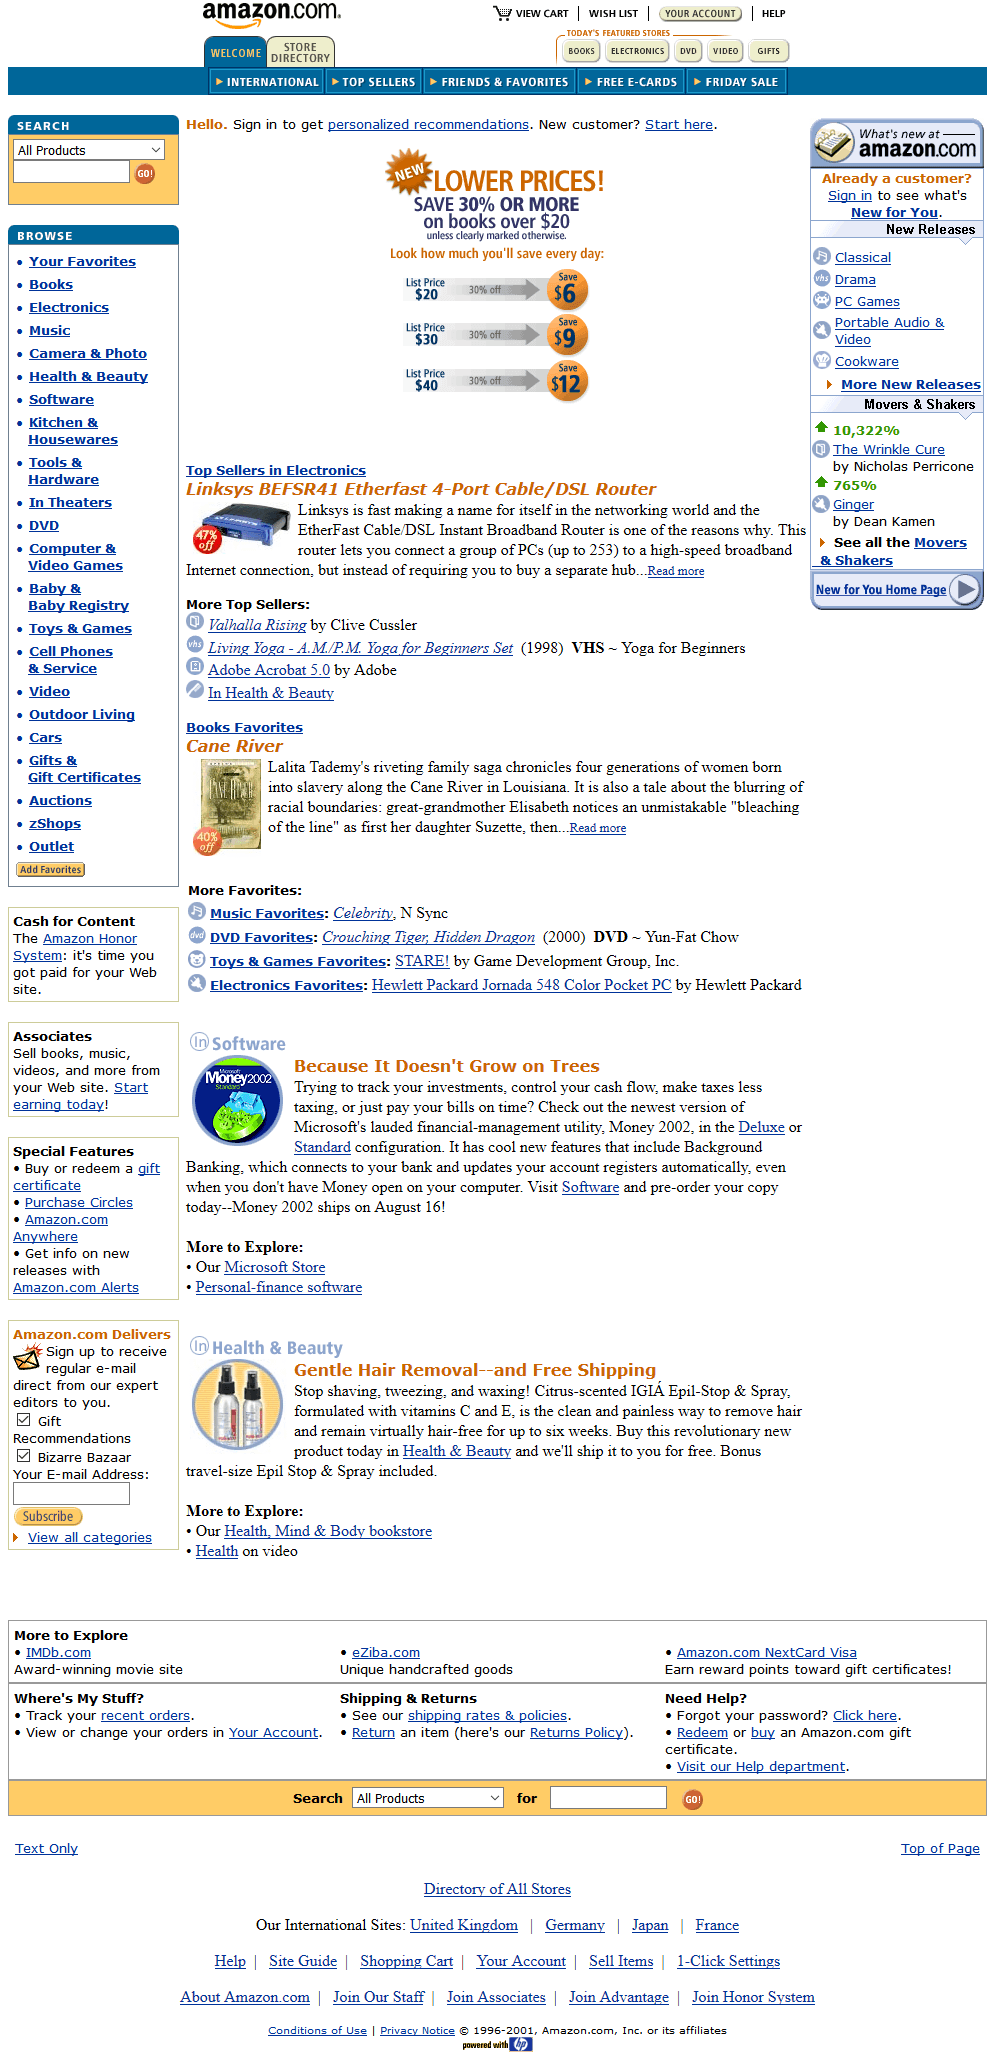 Amazon in 2001